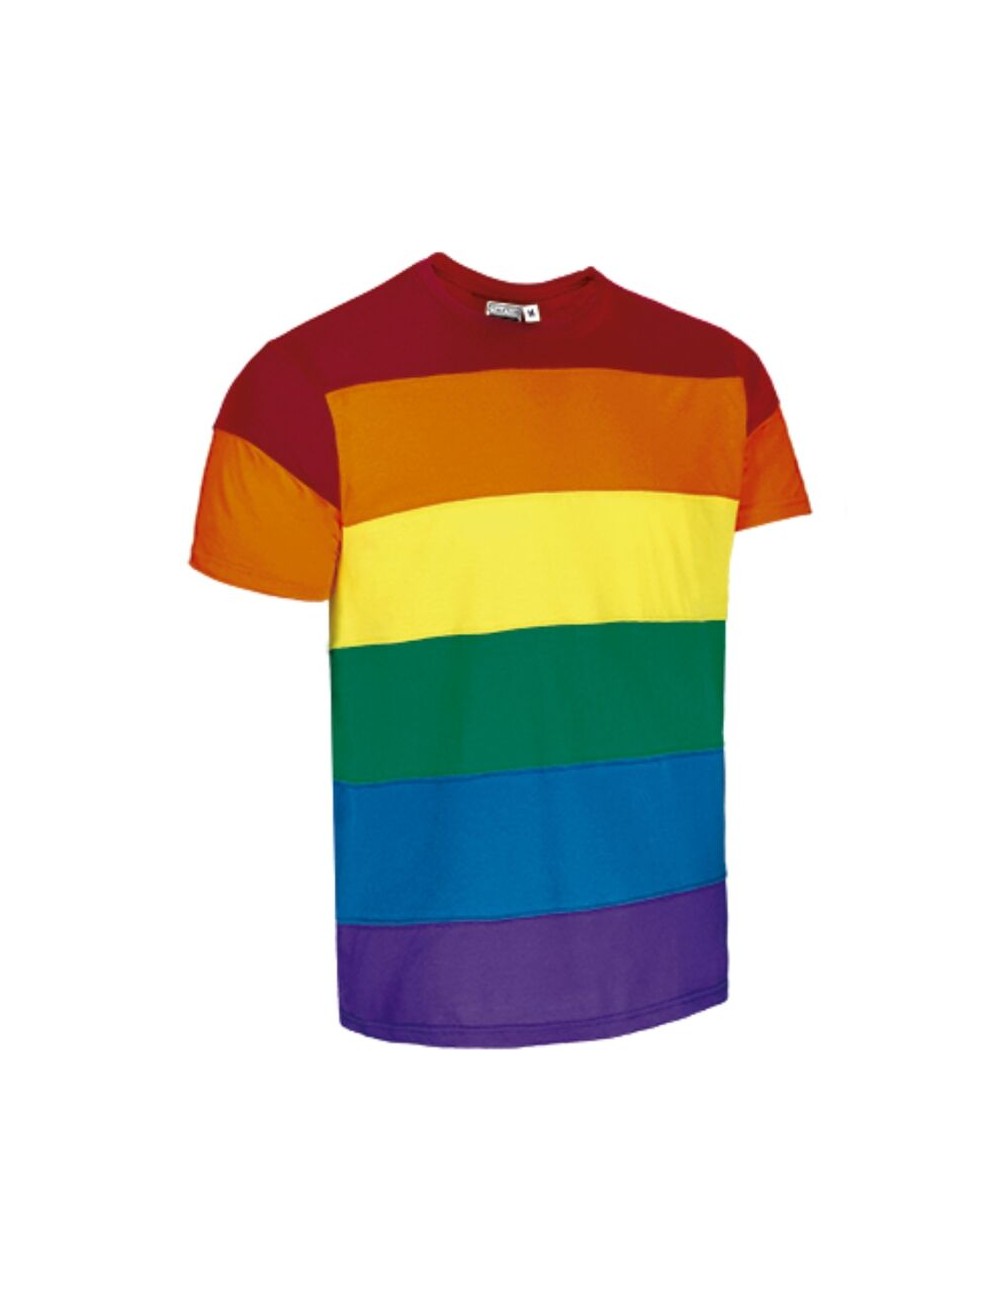 PRIDE - T-SHIRT LGBT TAGLIA XL